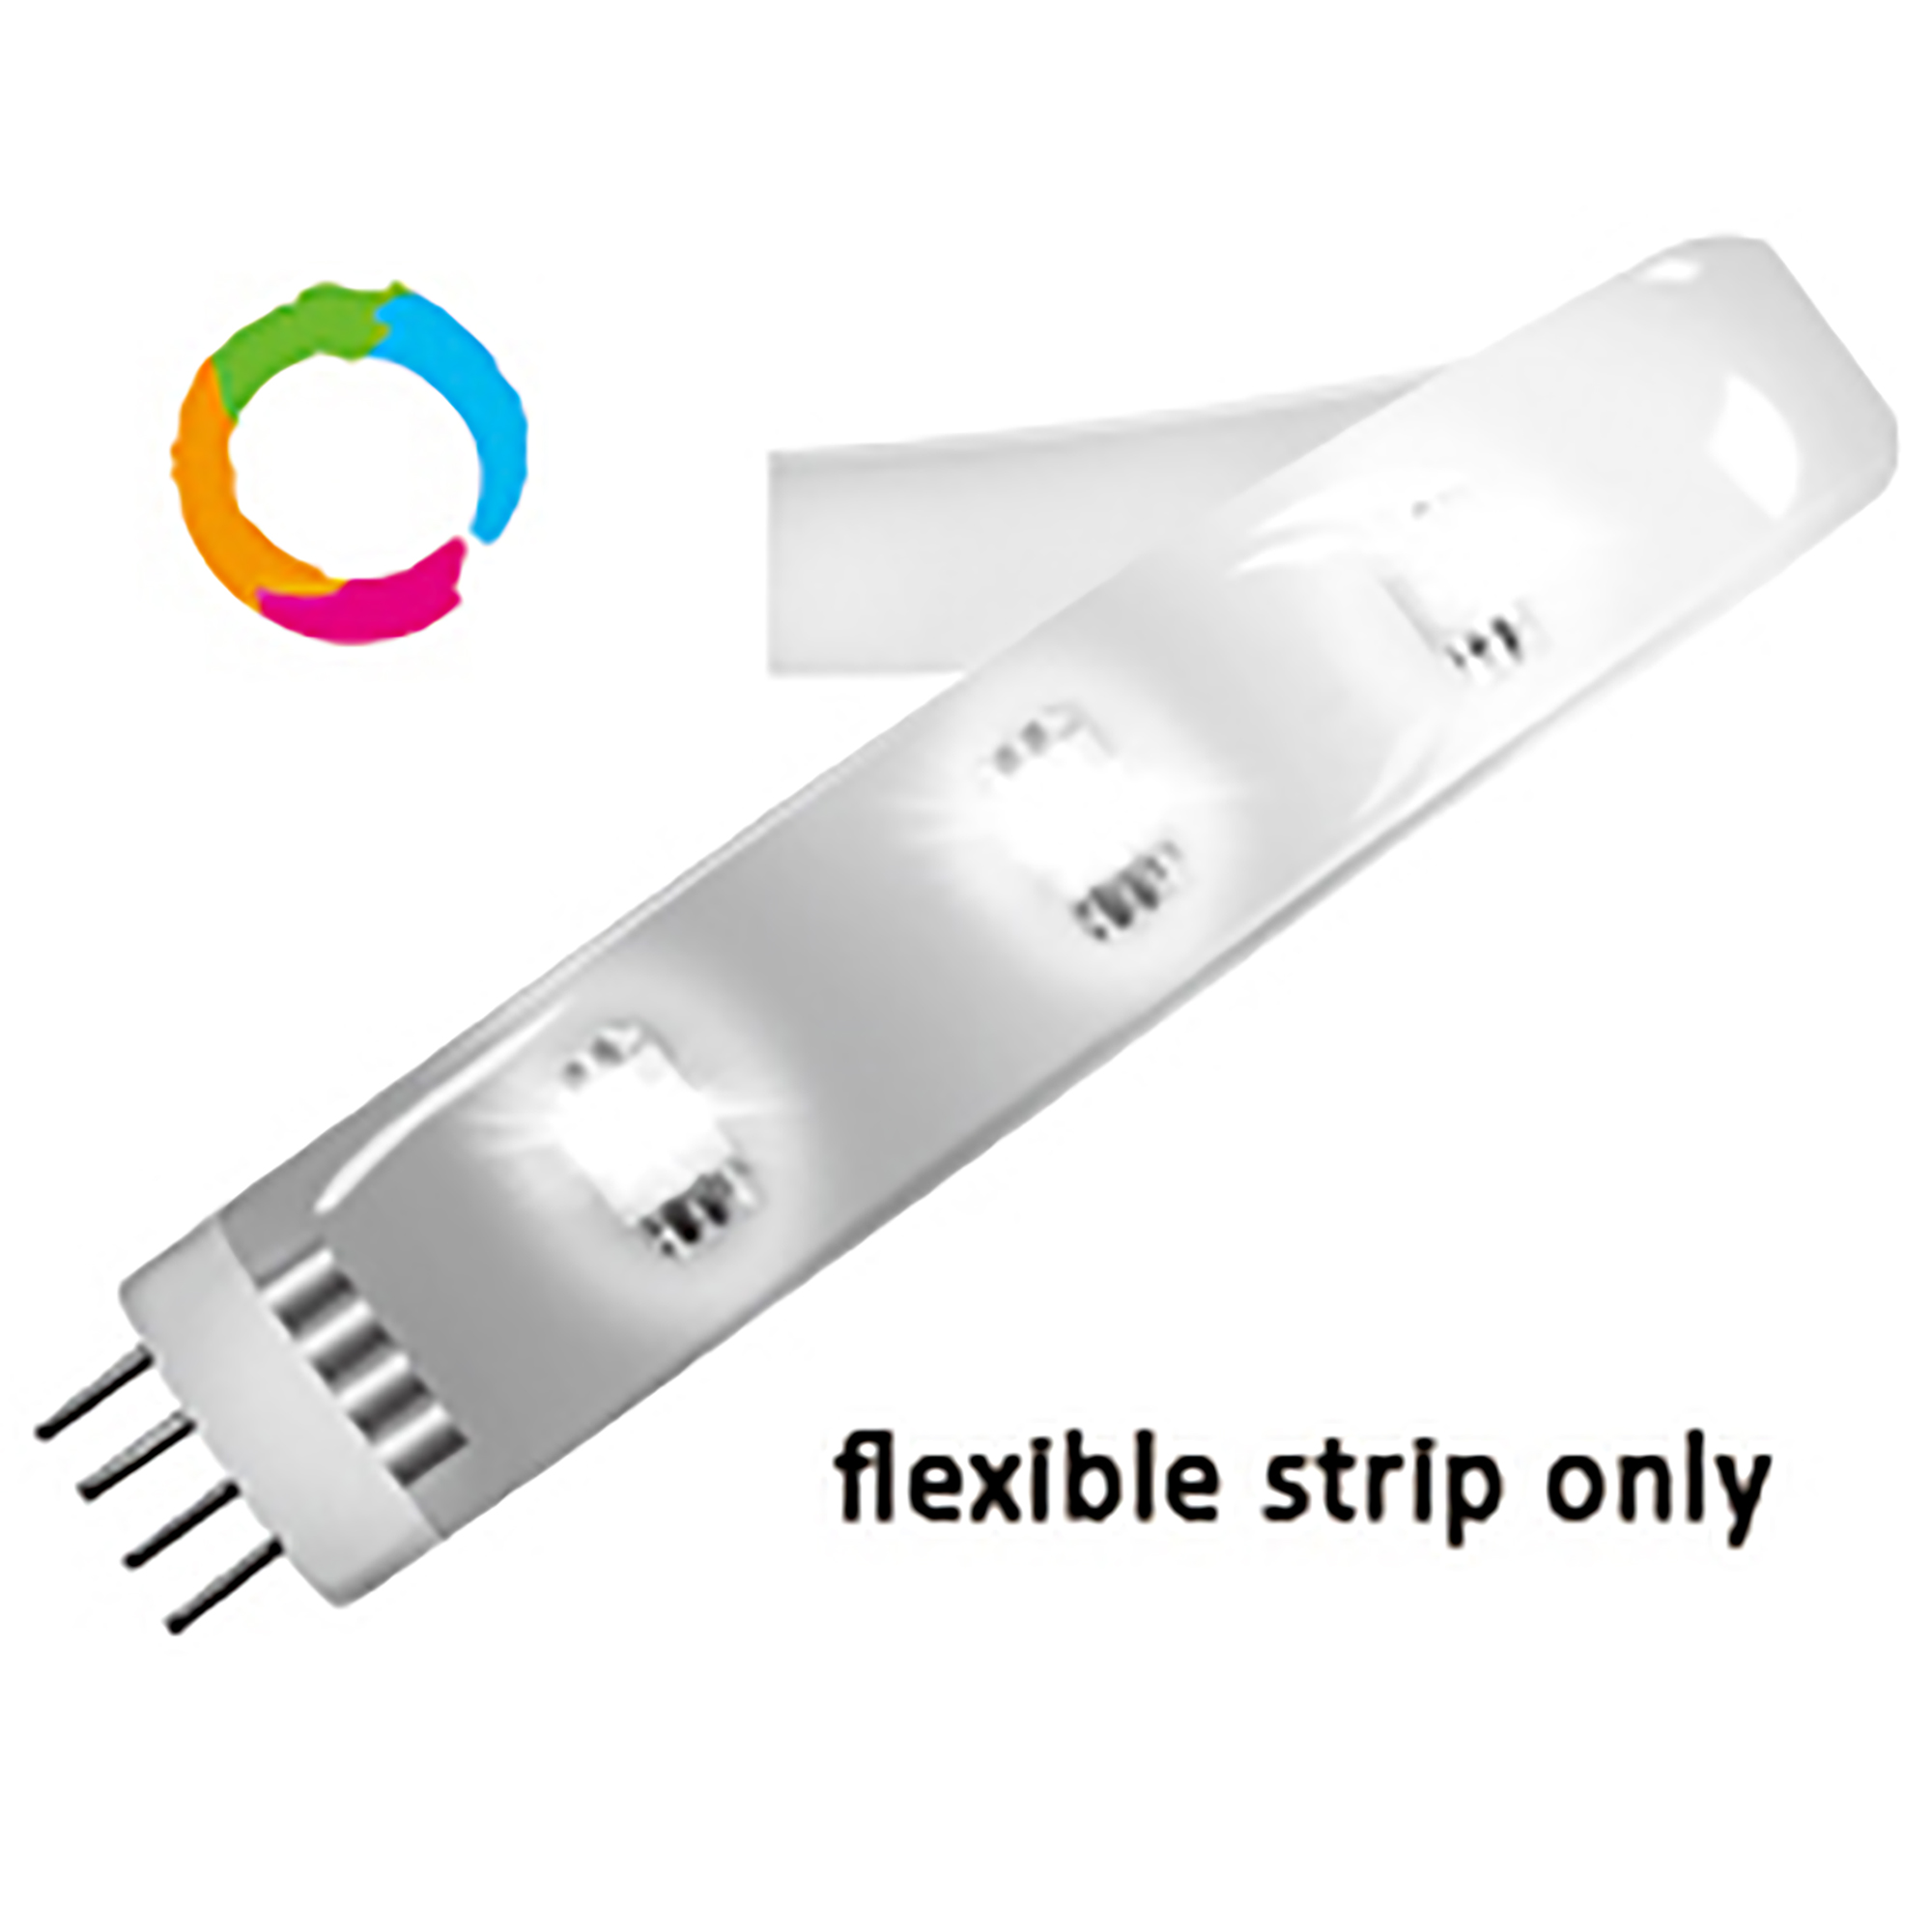 11126  Fluid Multi-Colour 12 LED Flexible Strip